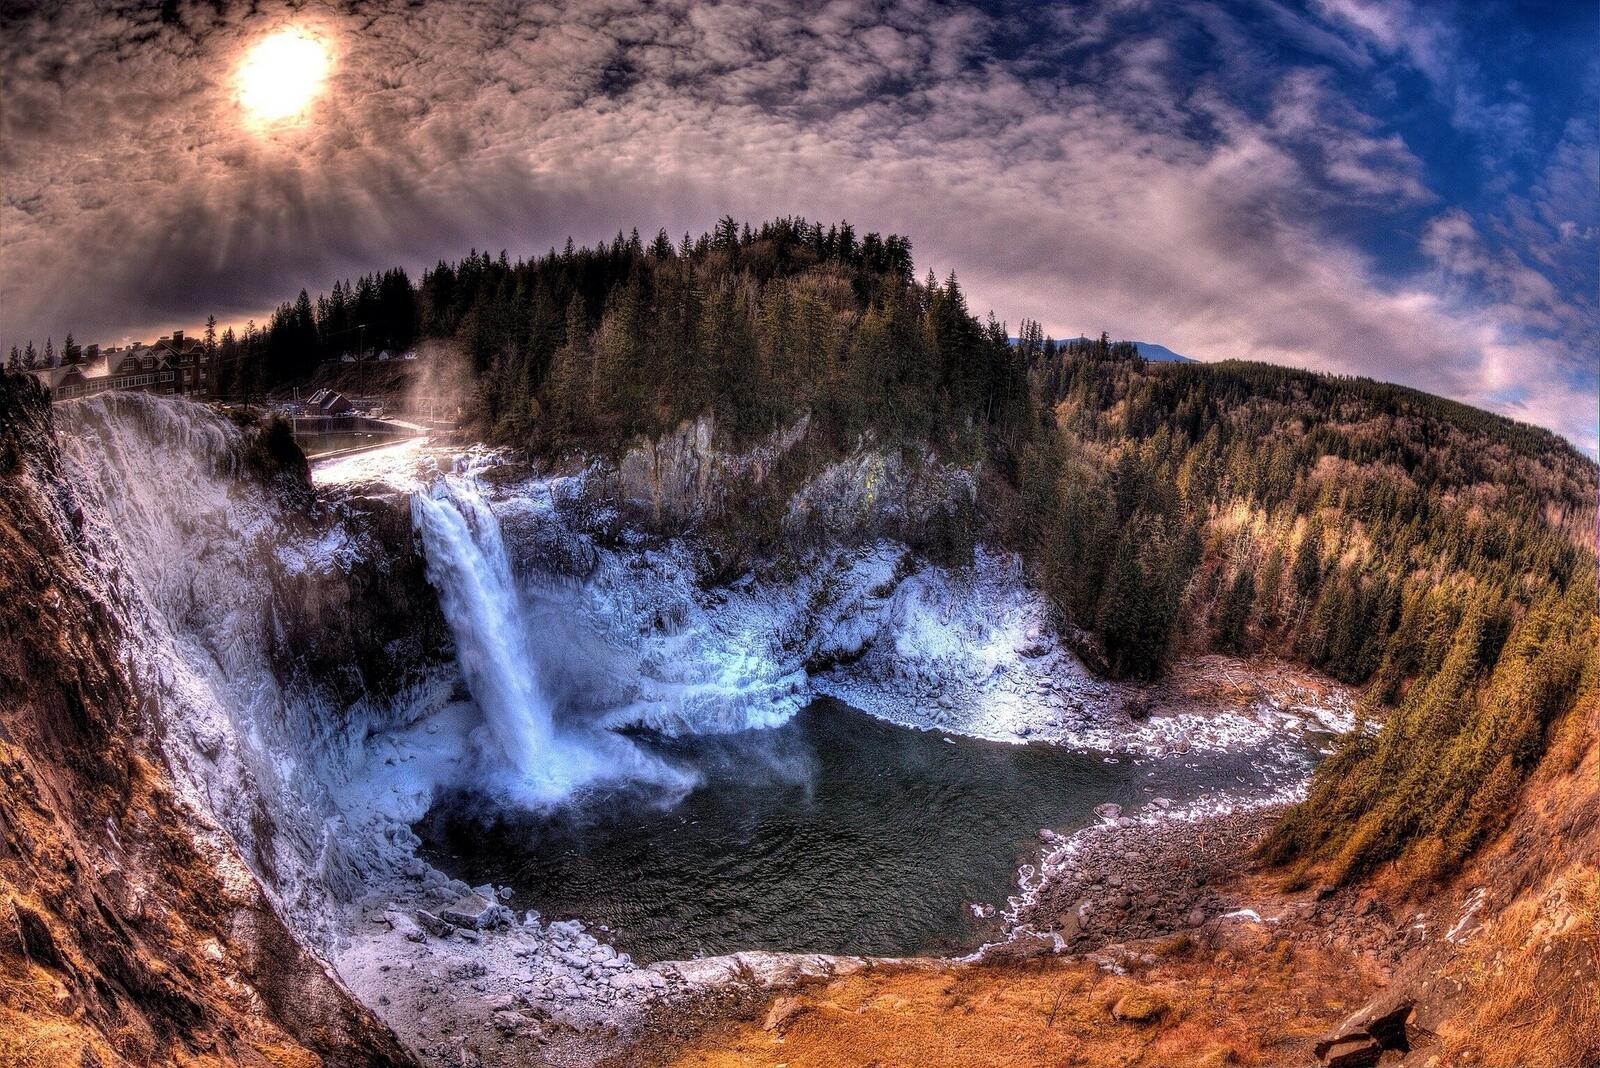 免费照片晴朗天气下的神奇斯诺科米瀑布